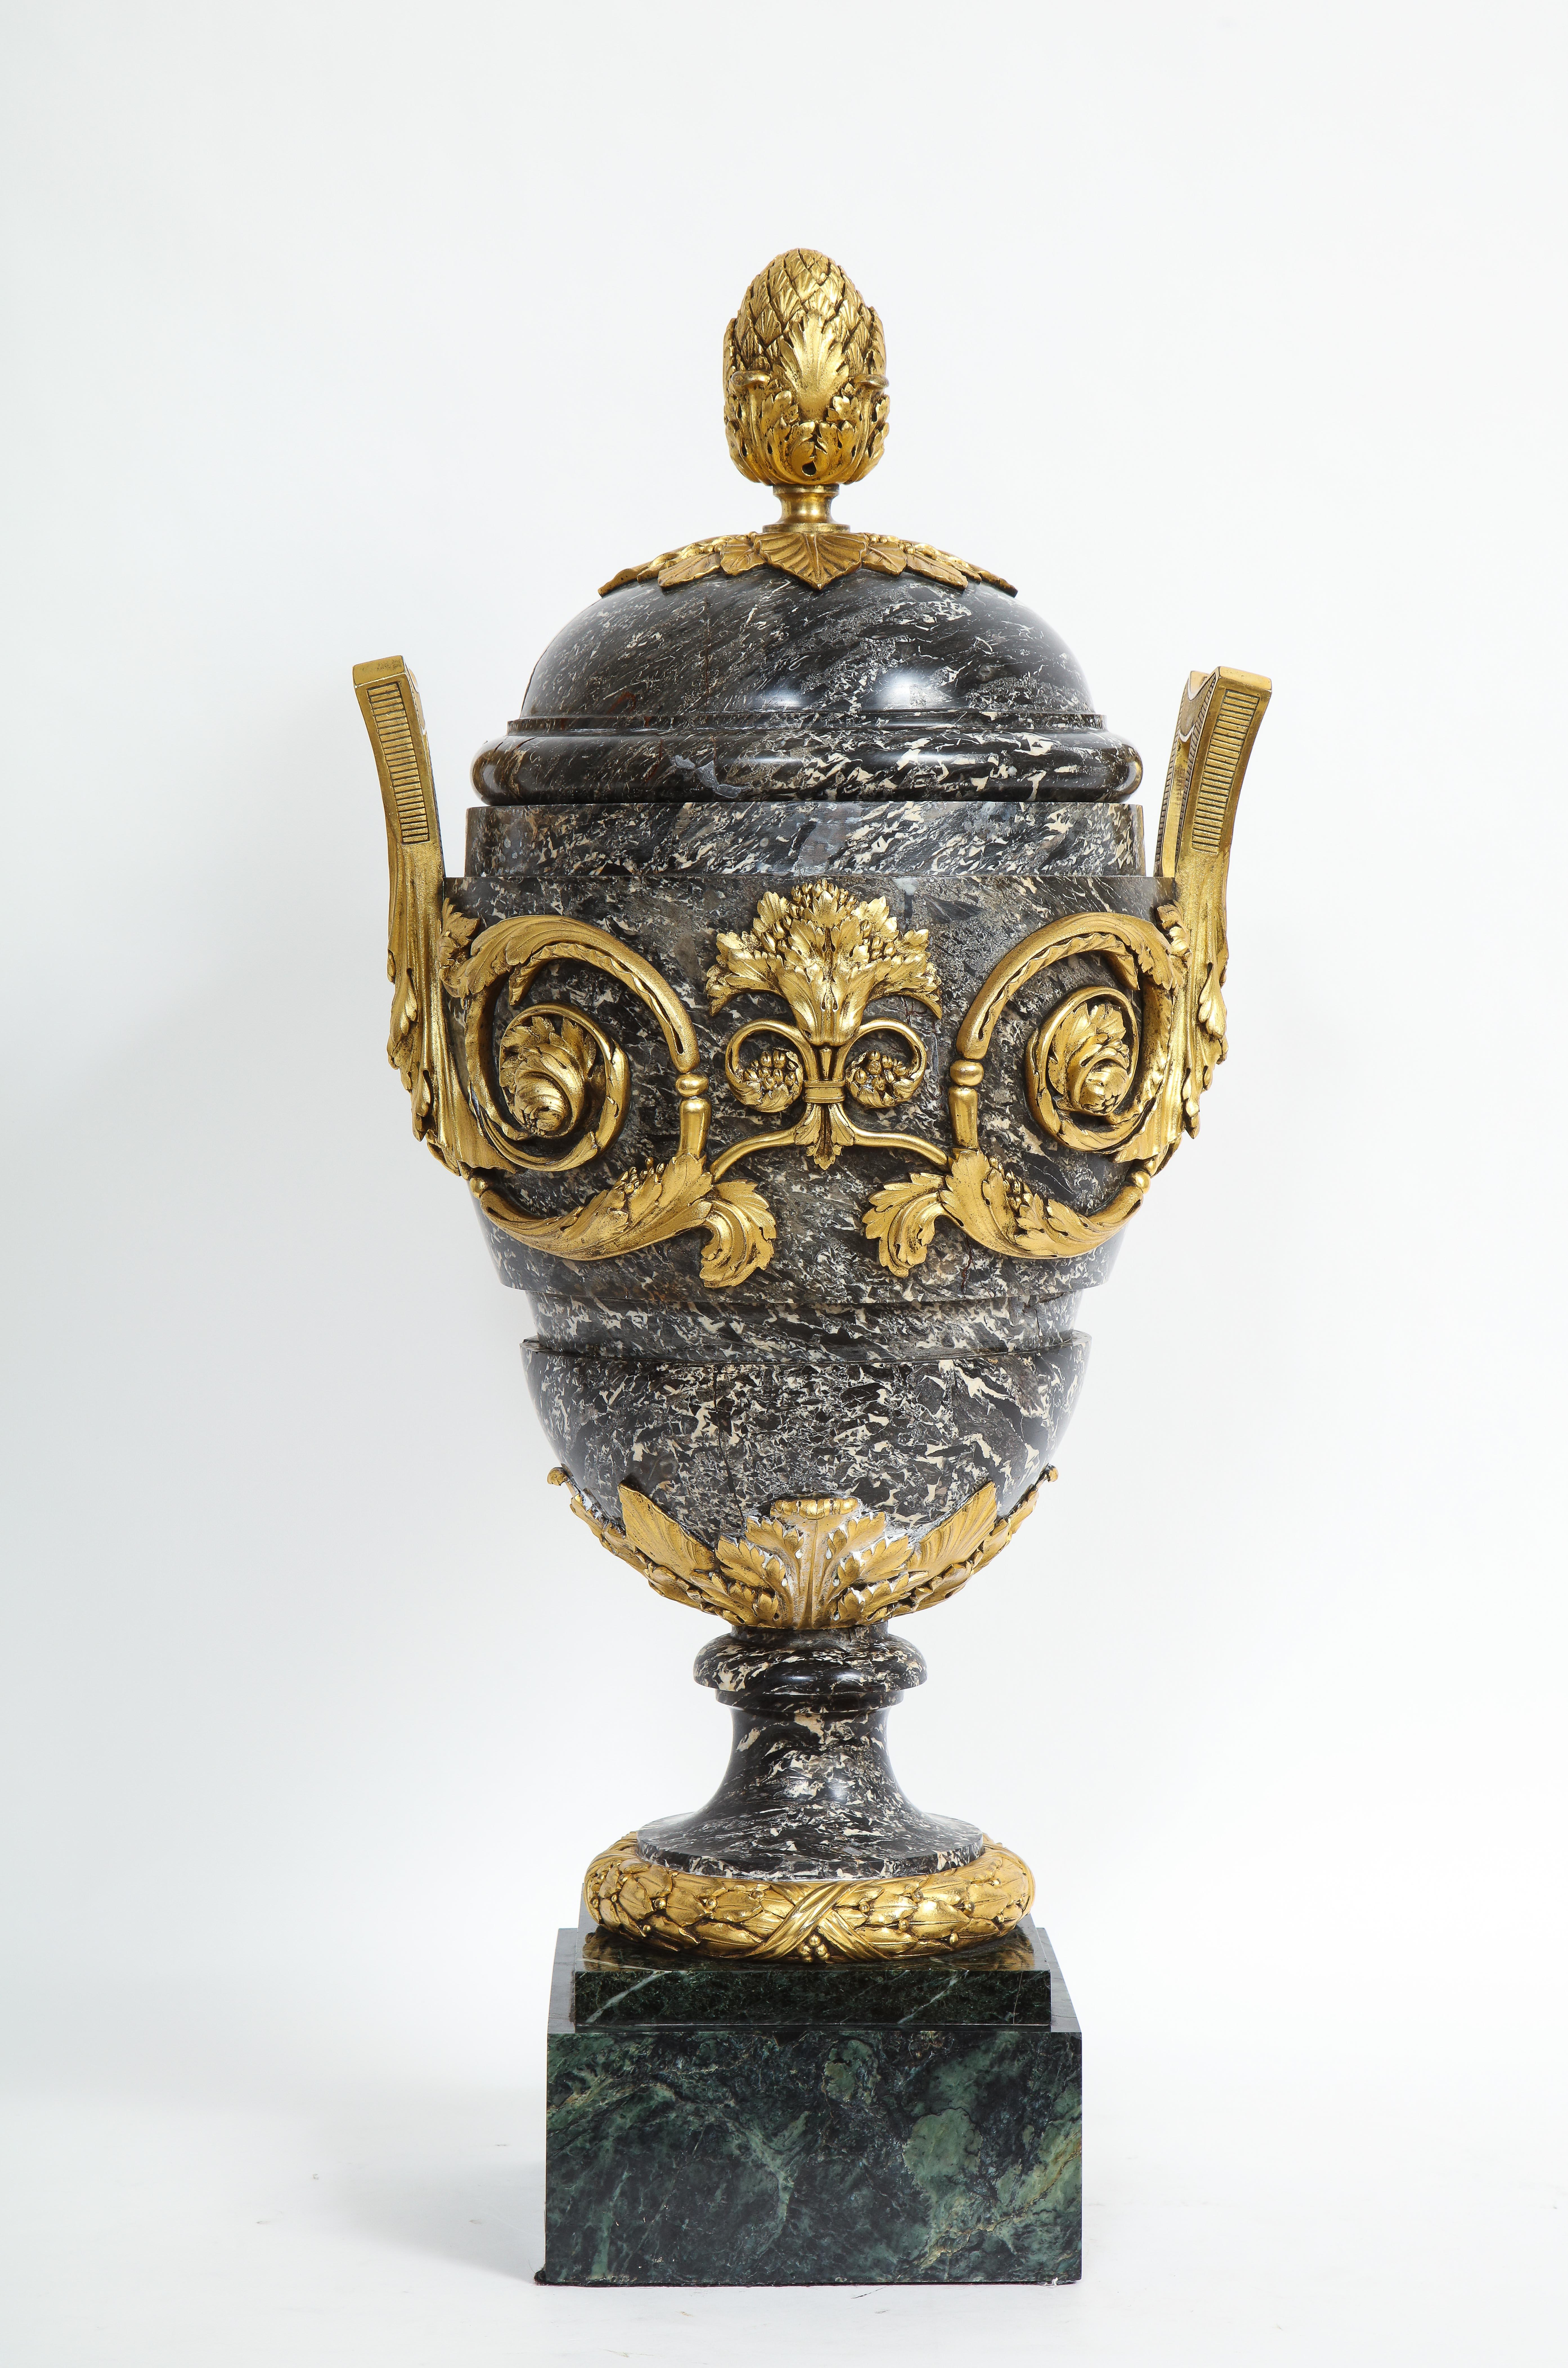 Monumentale französische Ormolu-Urne aus dem späten 1700/frühen 1800 mit Marmor überzogen

Wir präsentieren eine außergewöhnliche monumentale französische Ormolu-Urne aus dem 18/19. Jahrhundert, die mit Marmor bedeckt ist. Diese exquisite Urne wurde